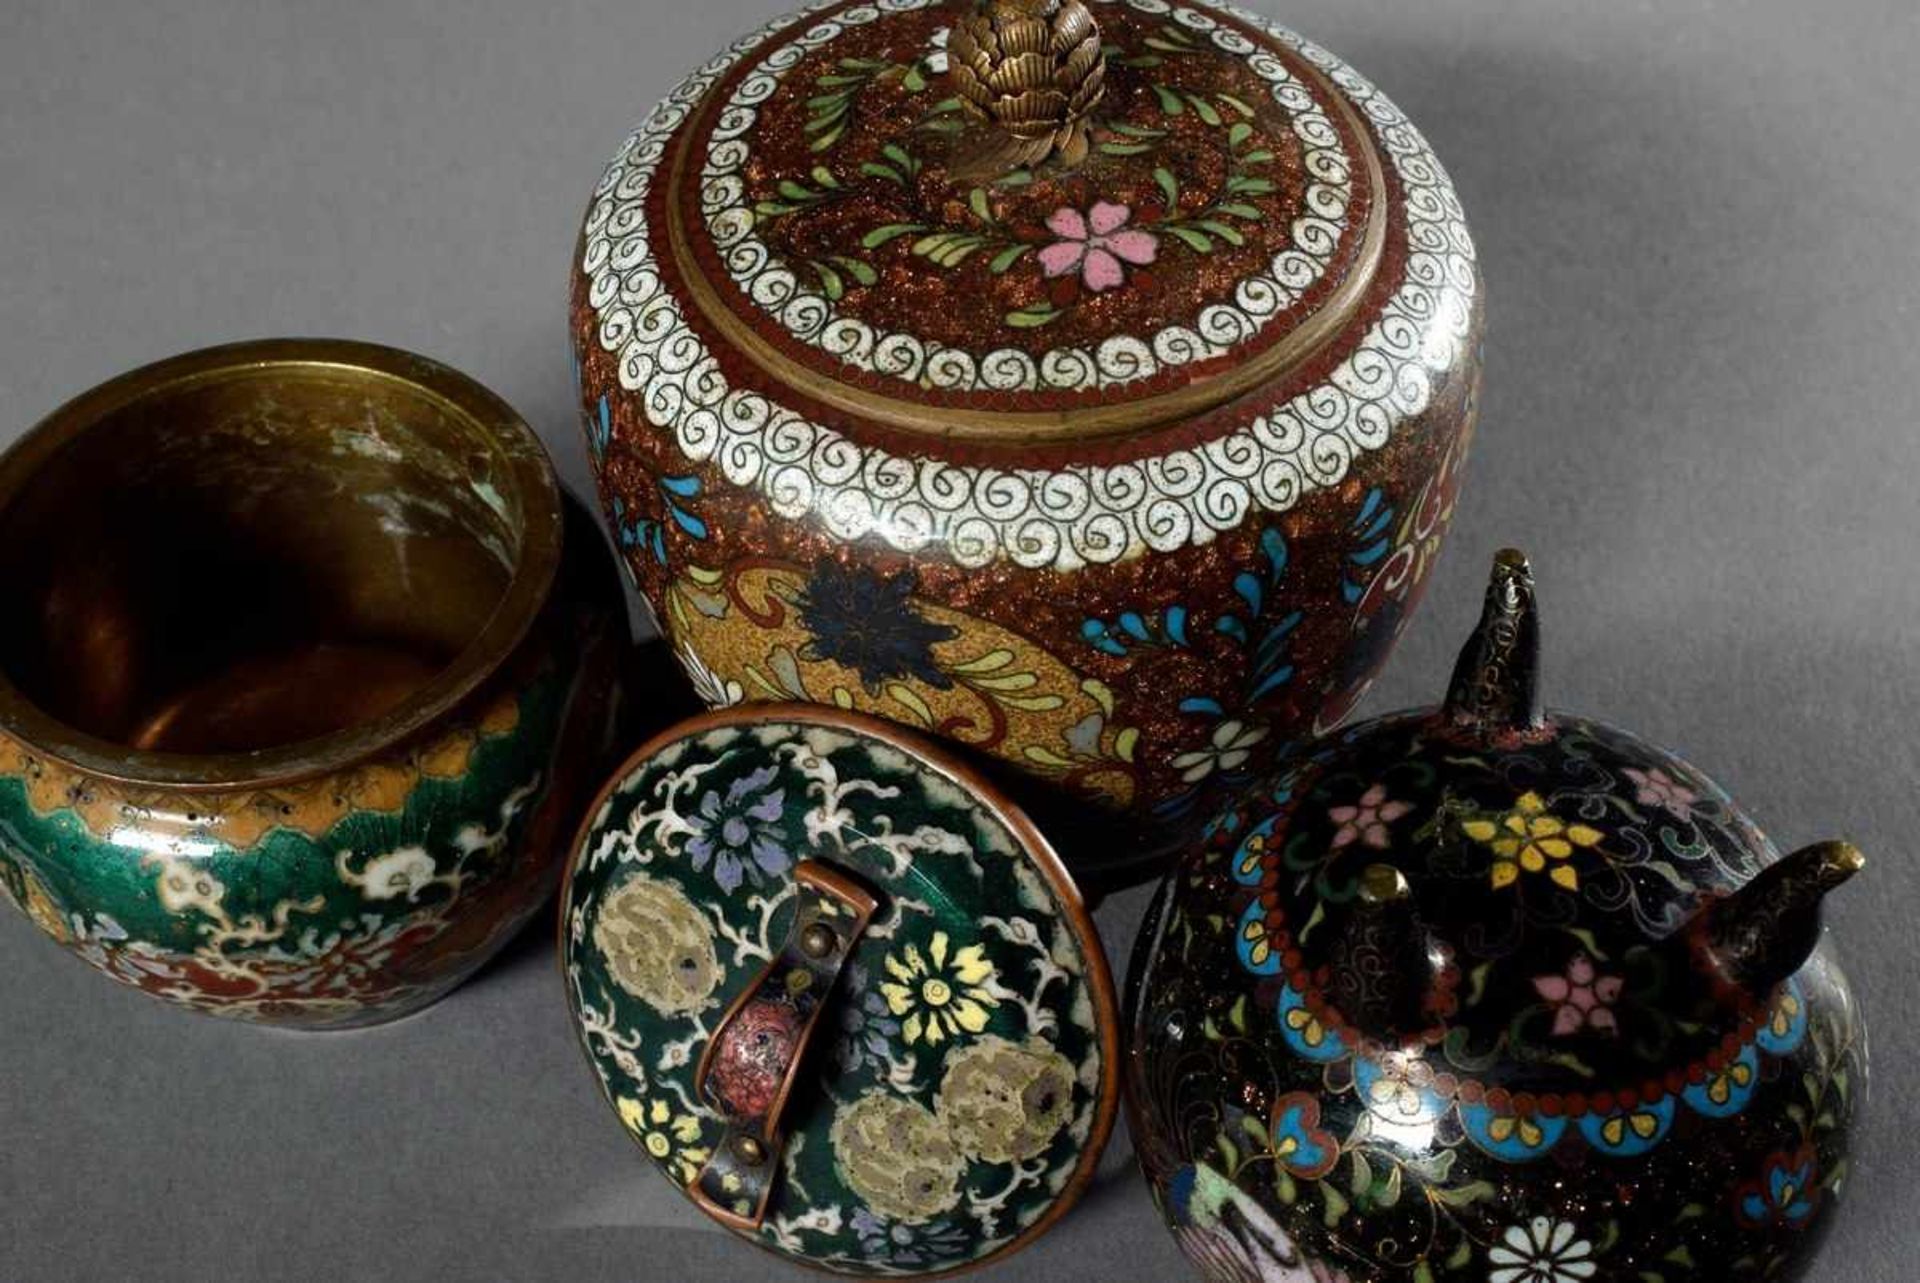 8 Diverse Teile Cloisonné Objekte in verschiedenen Mustern: 2 Vasen, 2 Deckeldosen, Koro, Japan um - Bild 2 aus 5